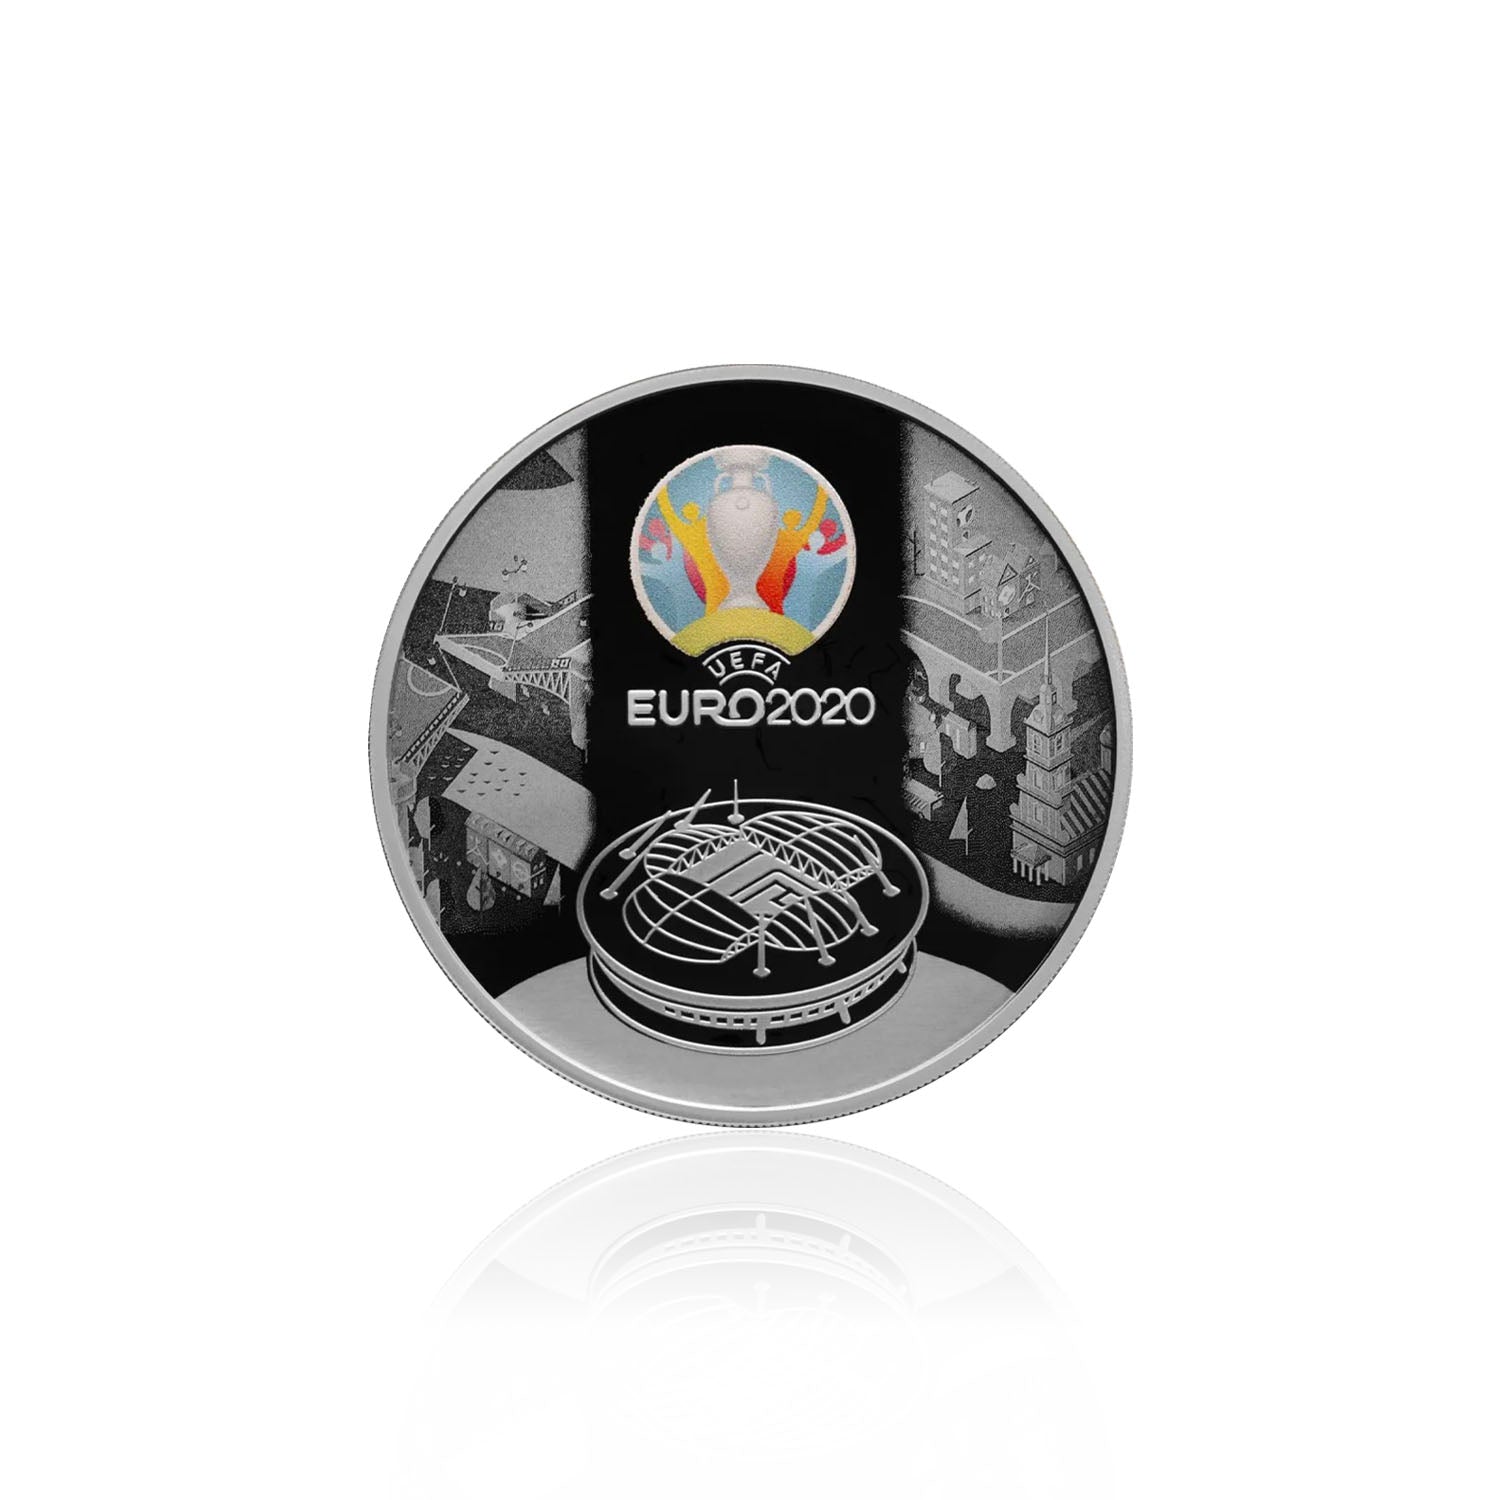 UEFA EURO 2020 Commemorative Silver Coin – Russia